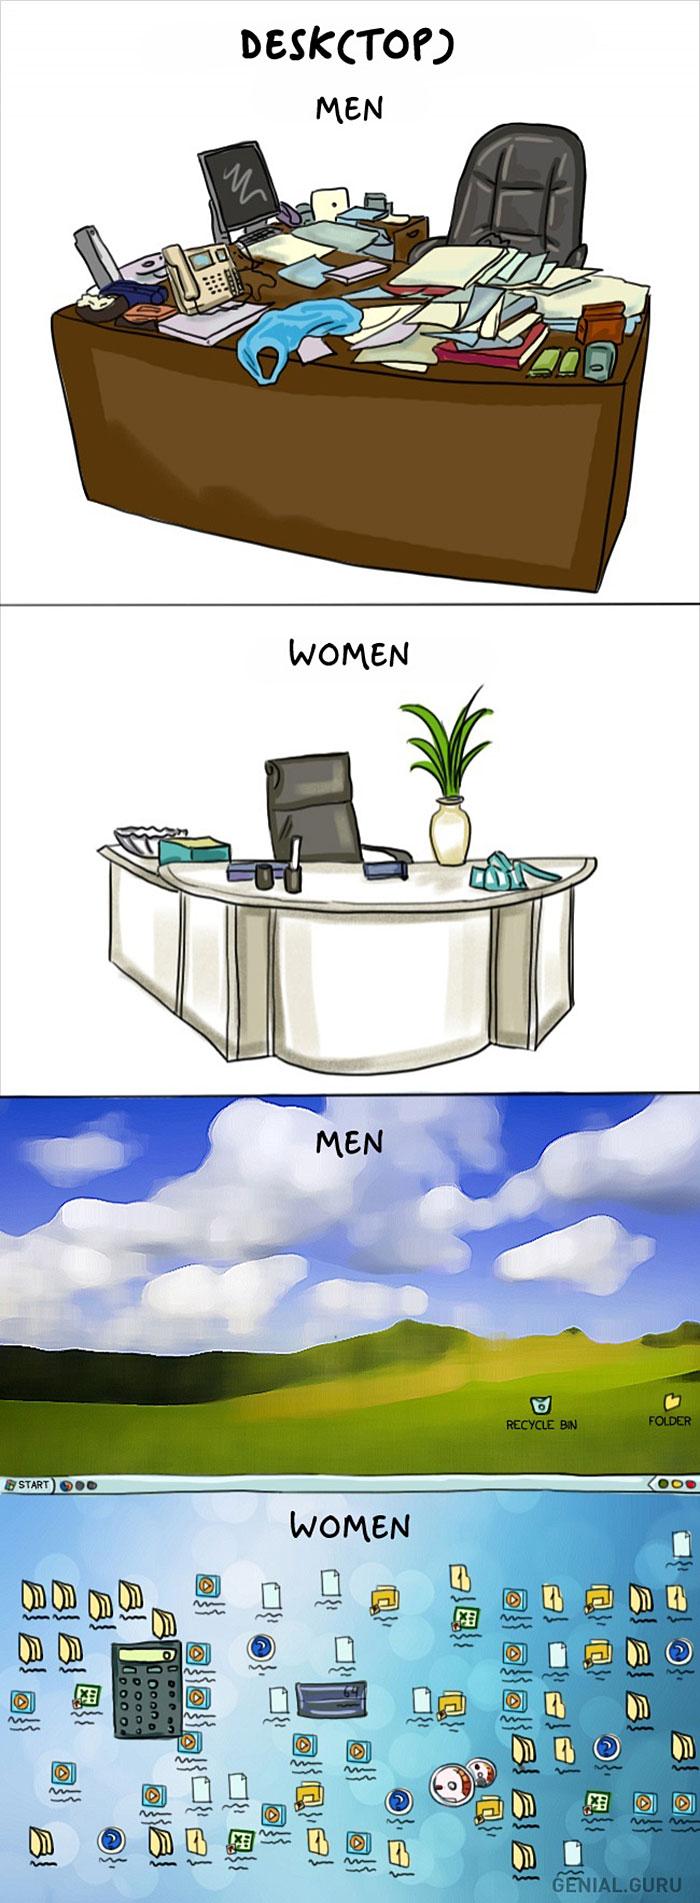 Κάποιες αστείες διαφορές μεταξύ αντρών και γυναικώ